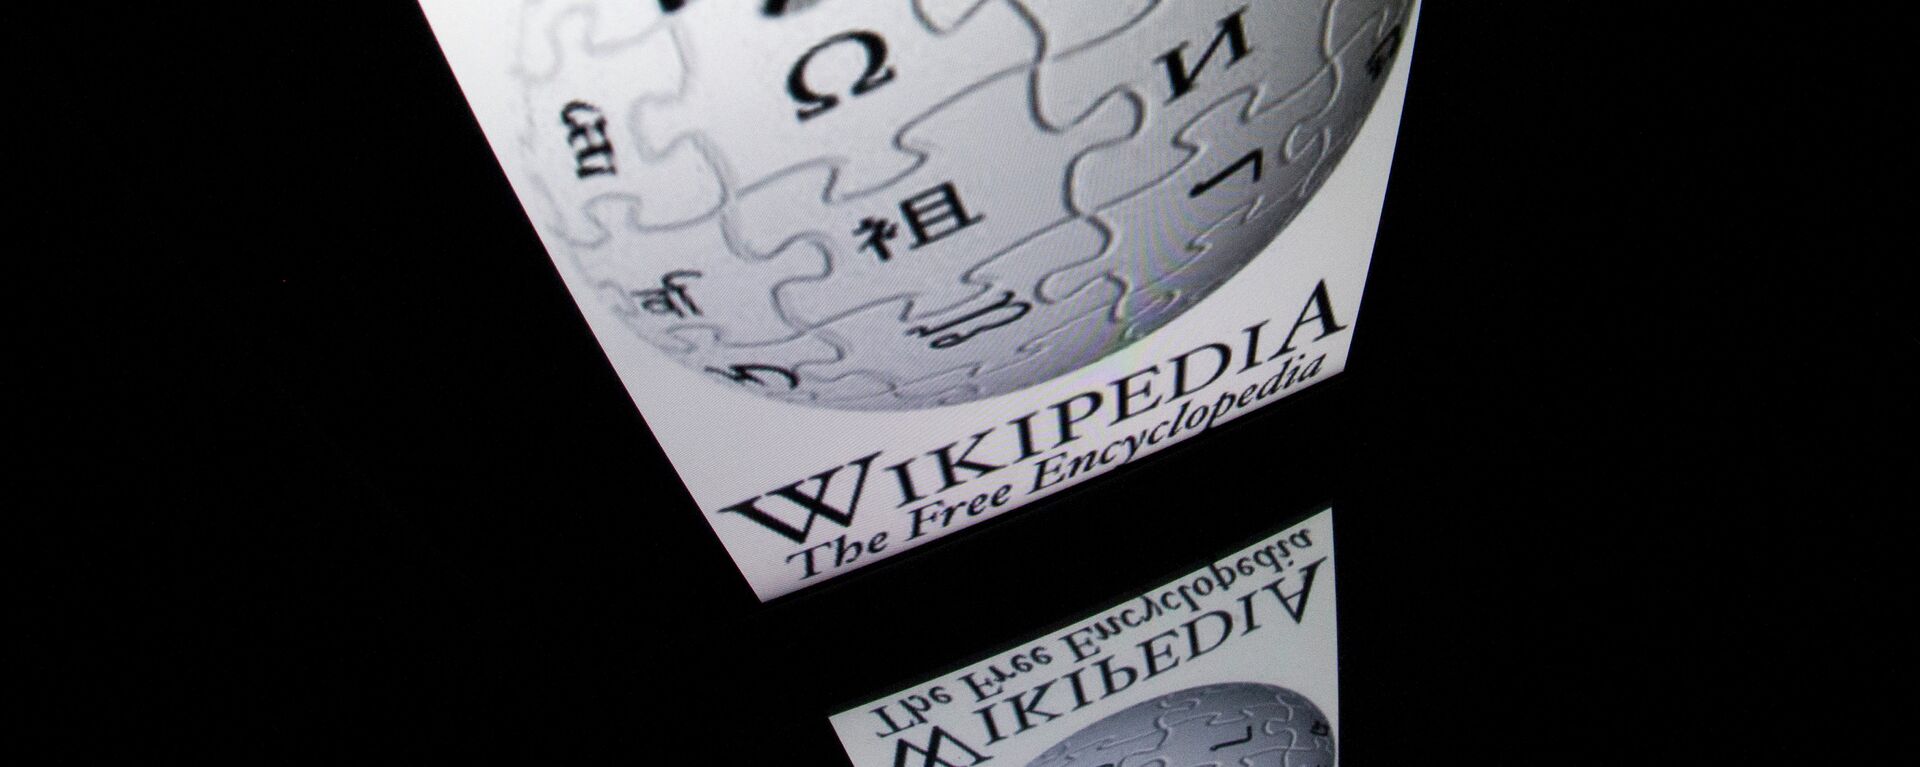 Por que Cleópatra foi o nome mais buscado na Wikipédia em 2022?, Curiosidade